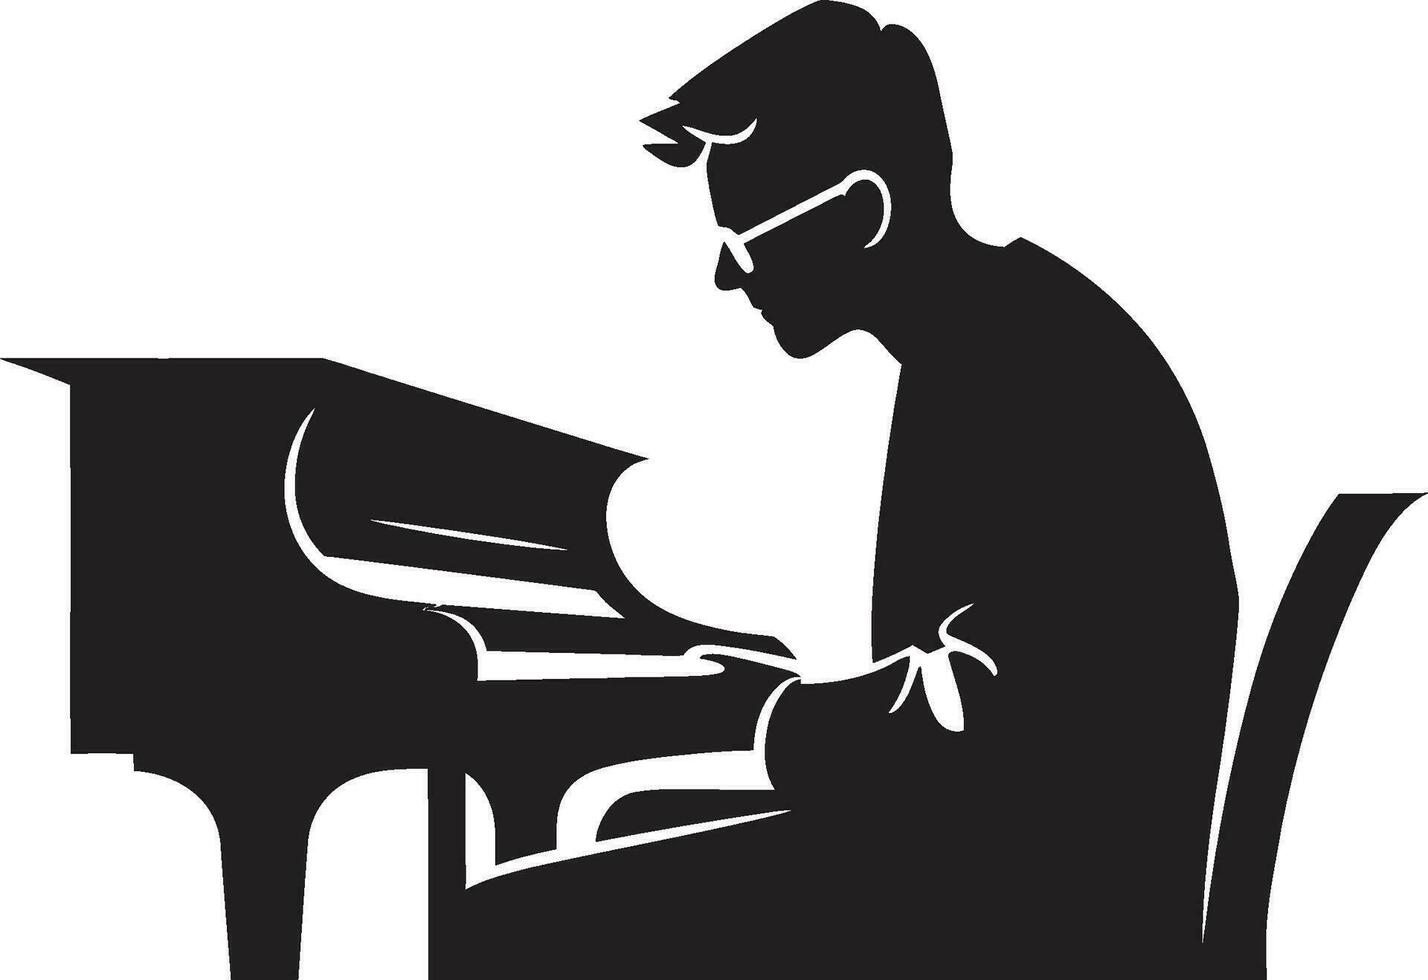 pianoforte sonata virtuoso nero icona rapsodico giocatore vettore nero design